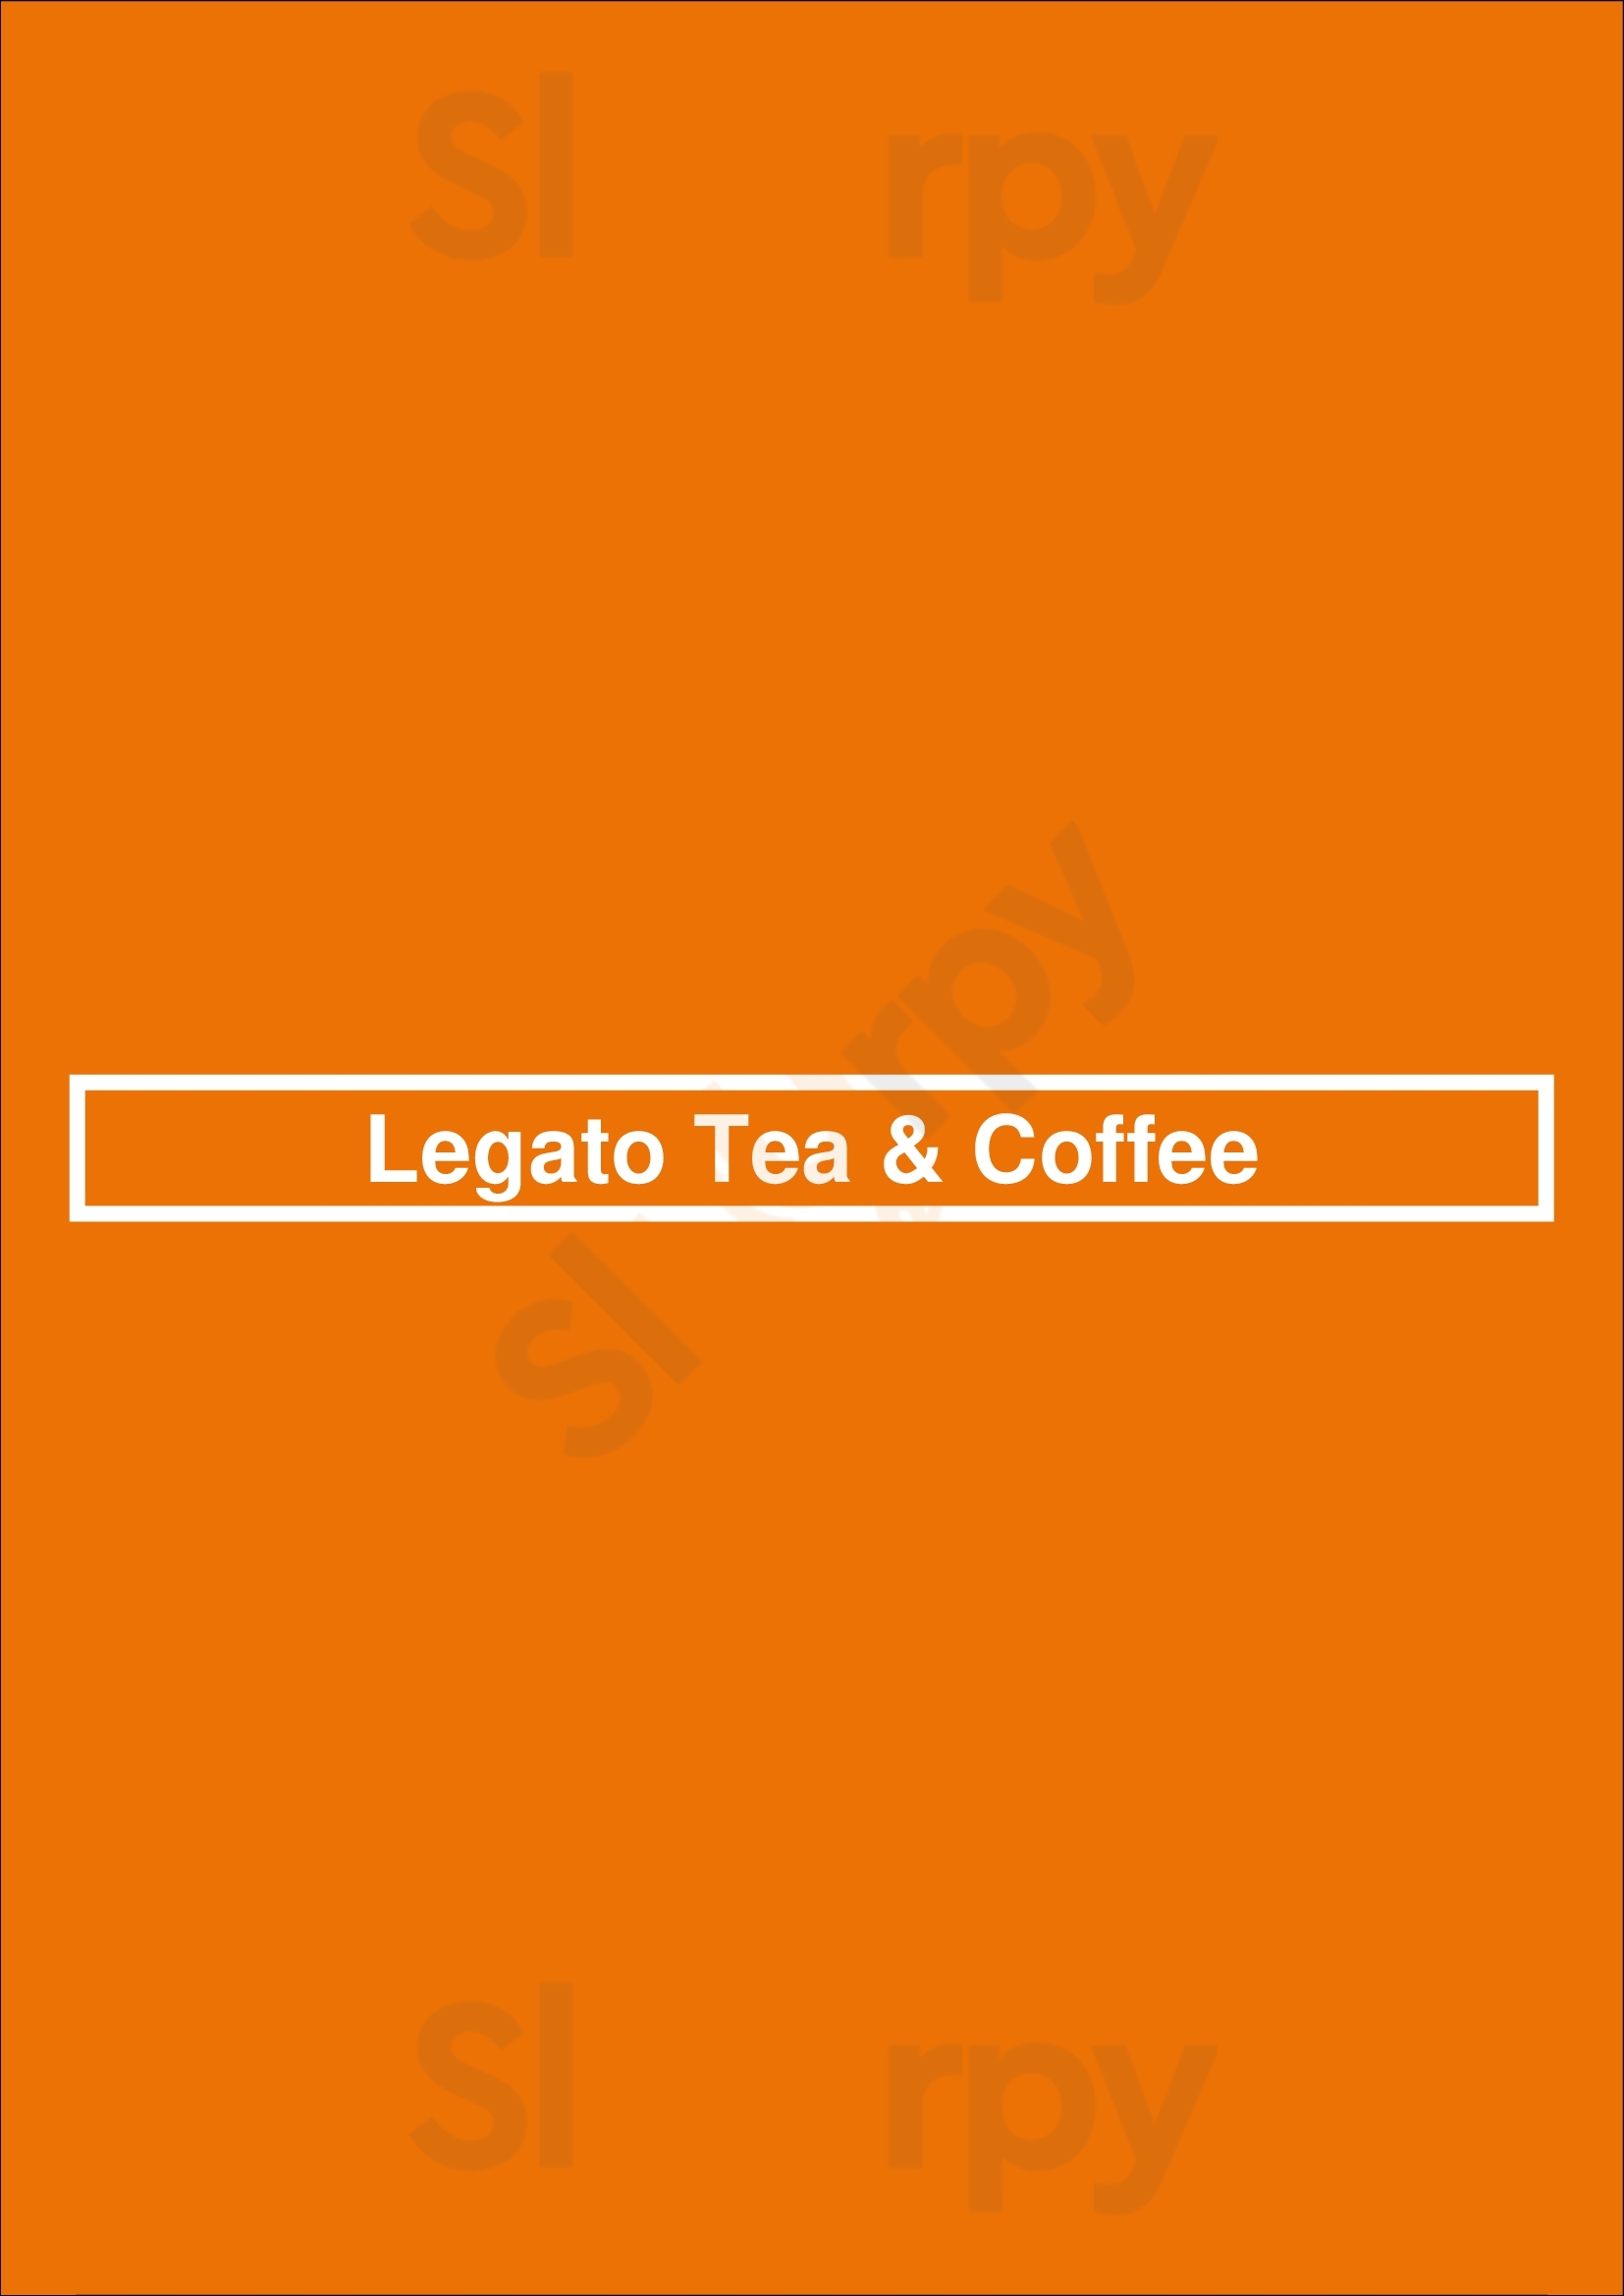 Legato Tea & Coffee Vancouver Menu - 1